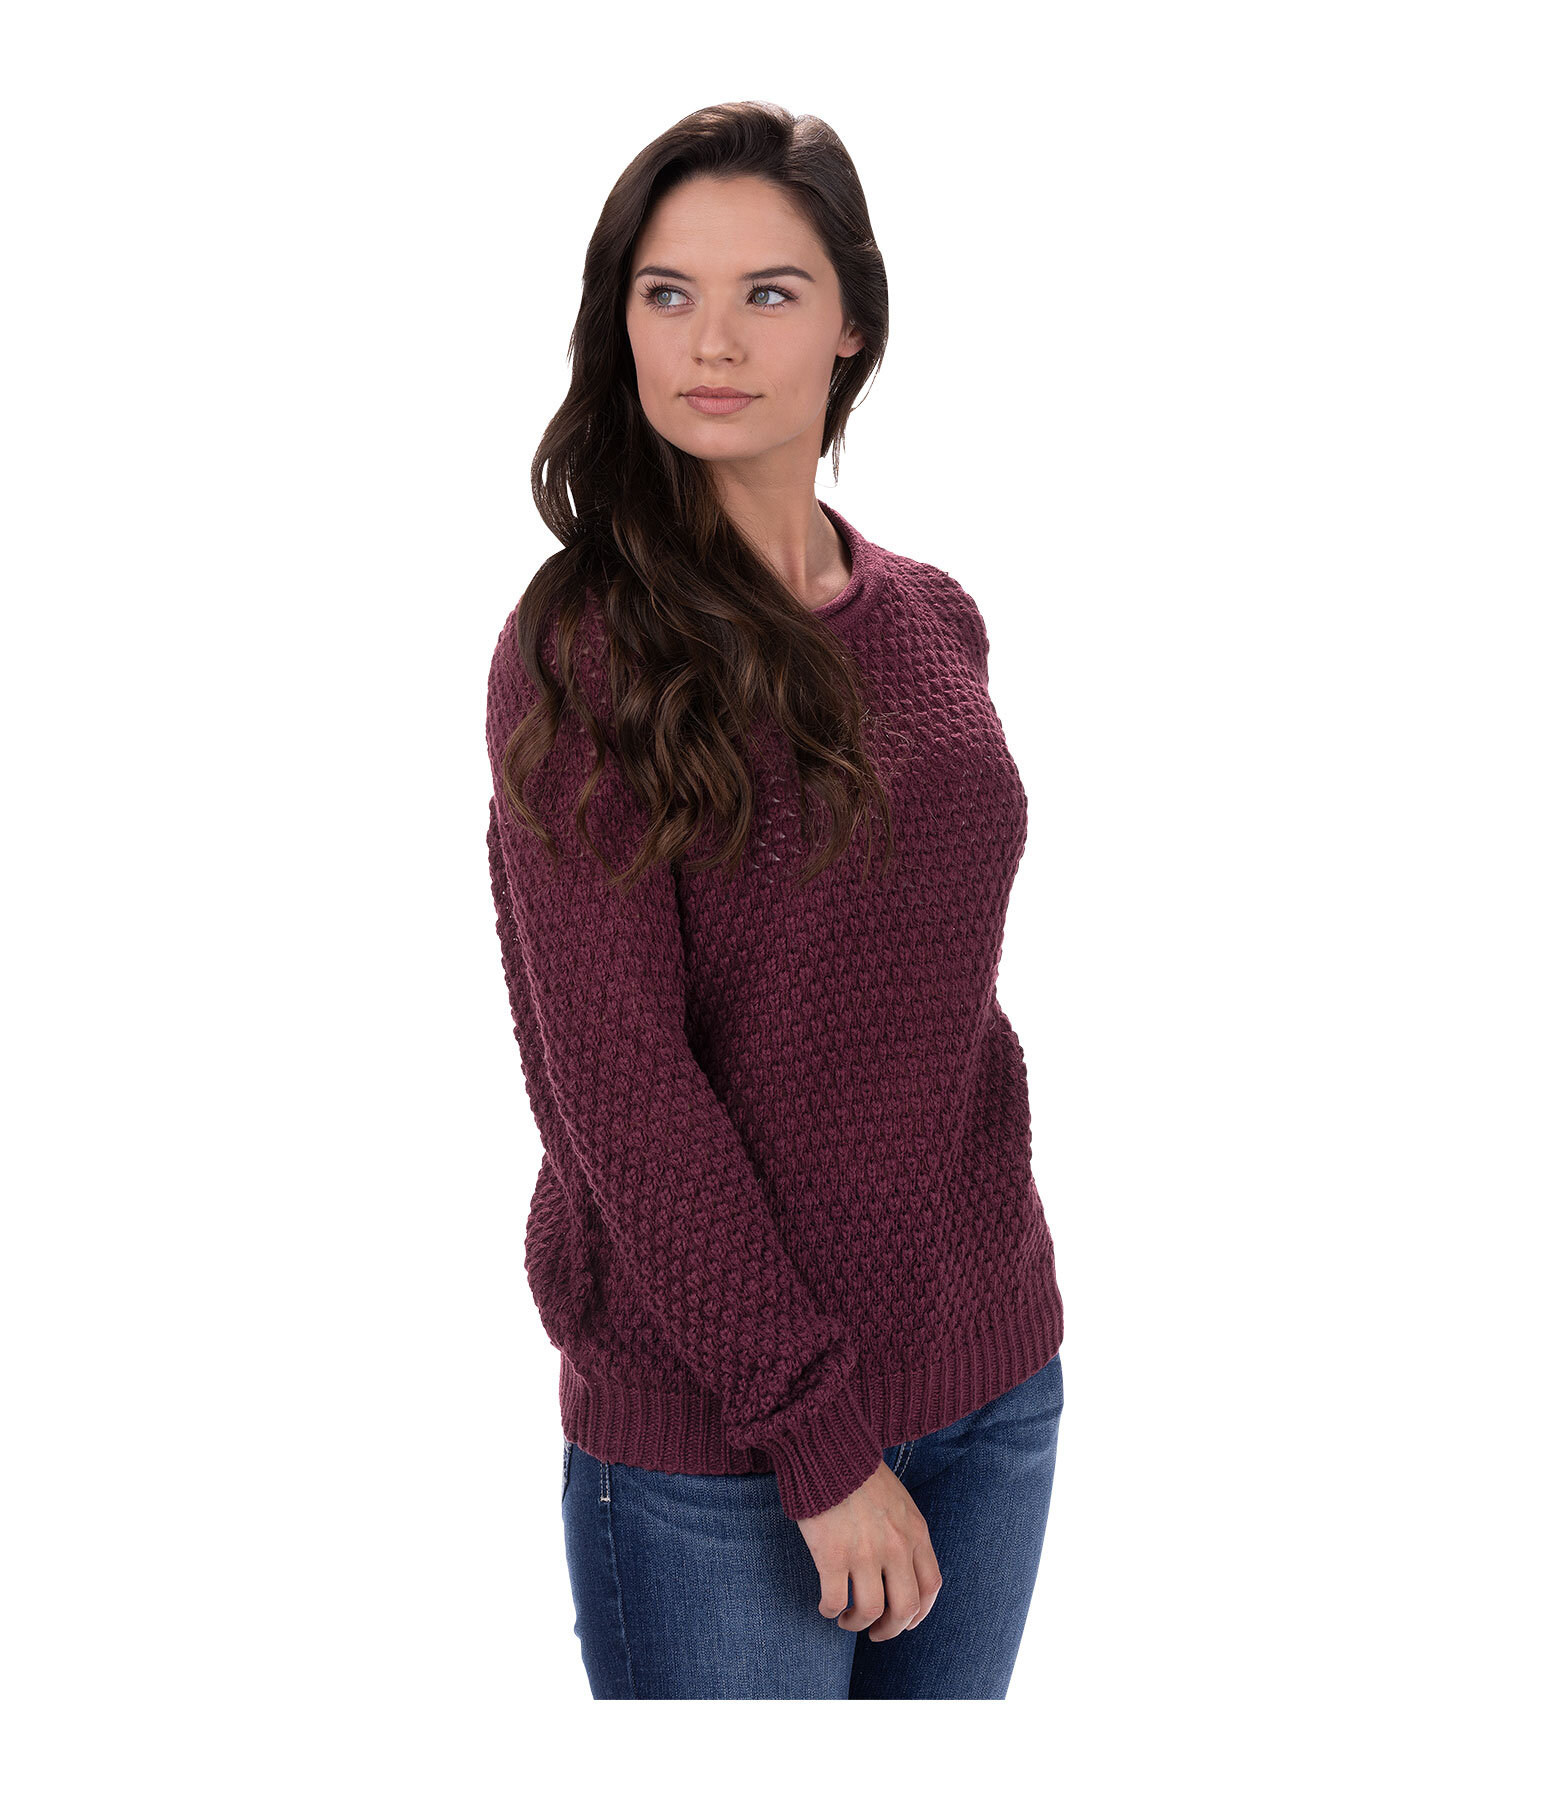 Ladies Knitted Sweater Nilah